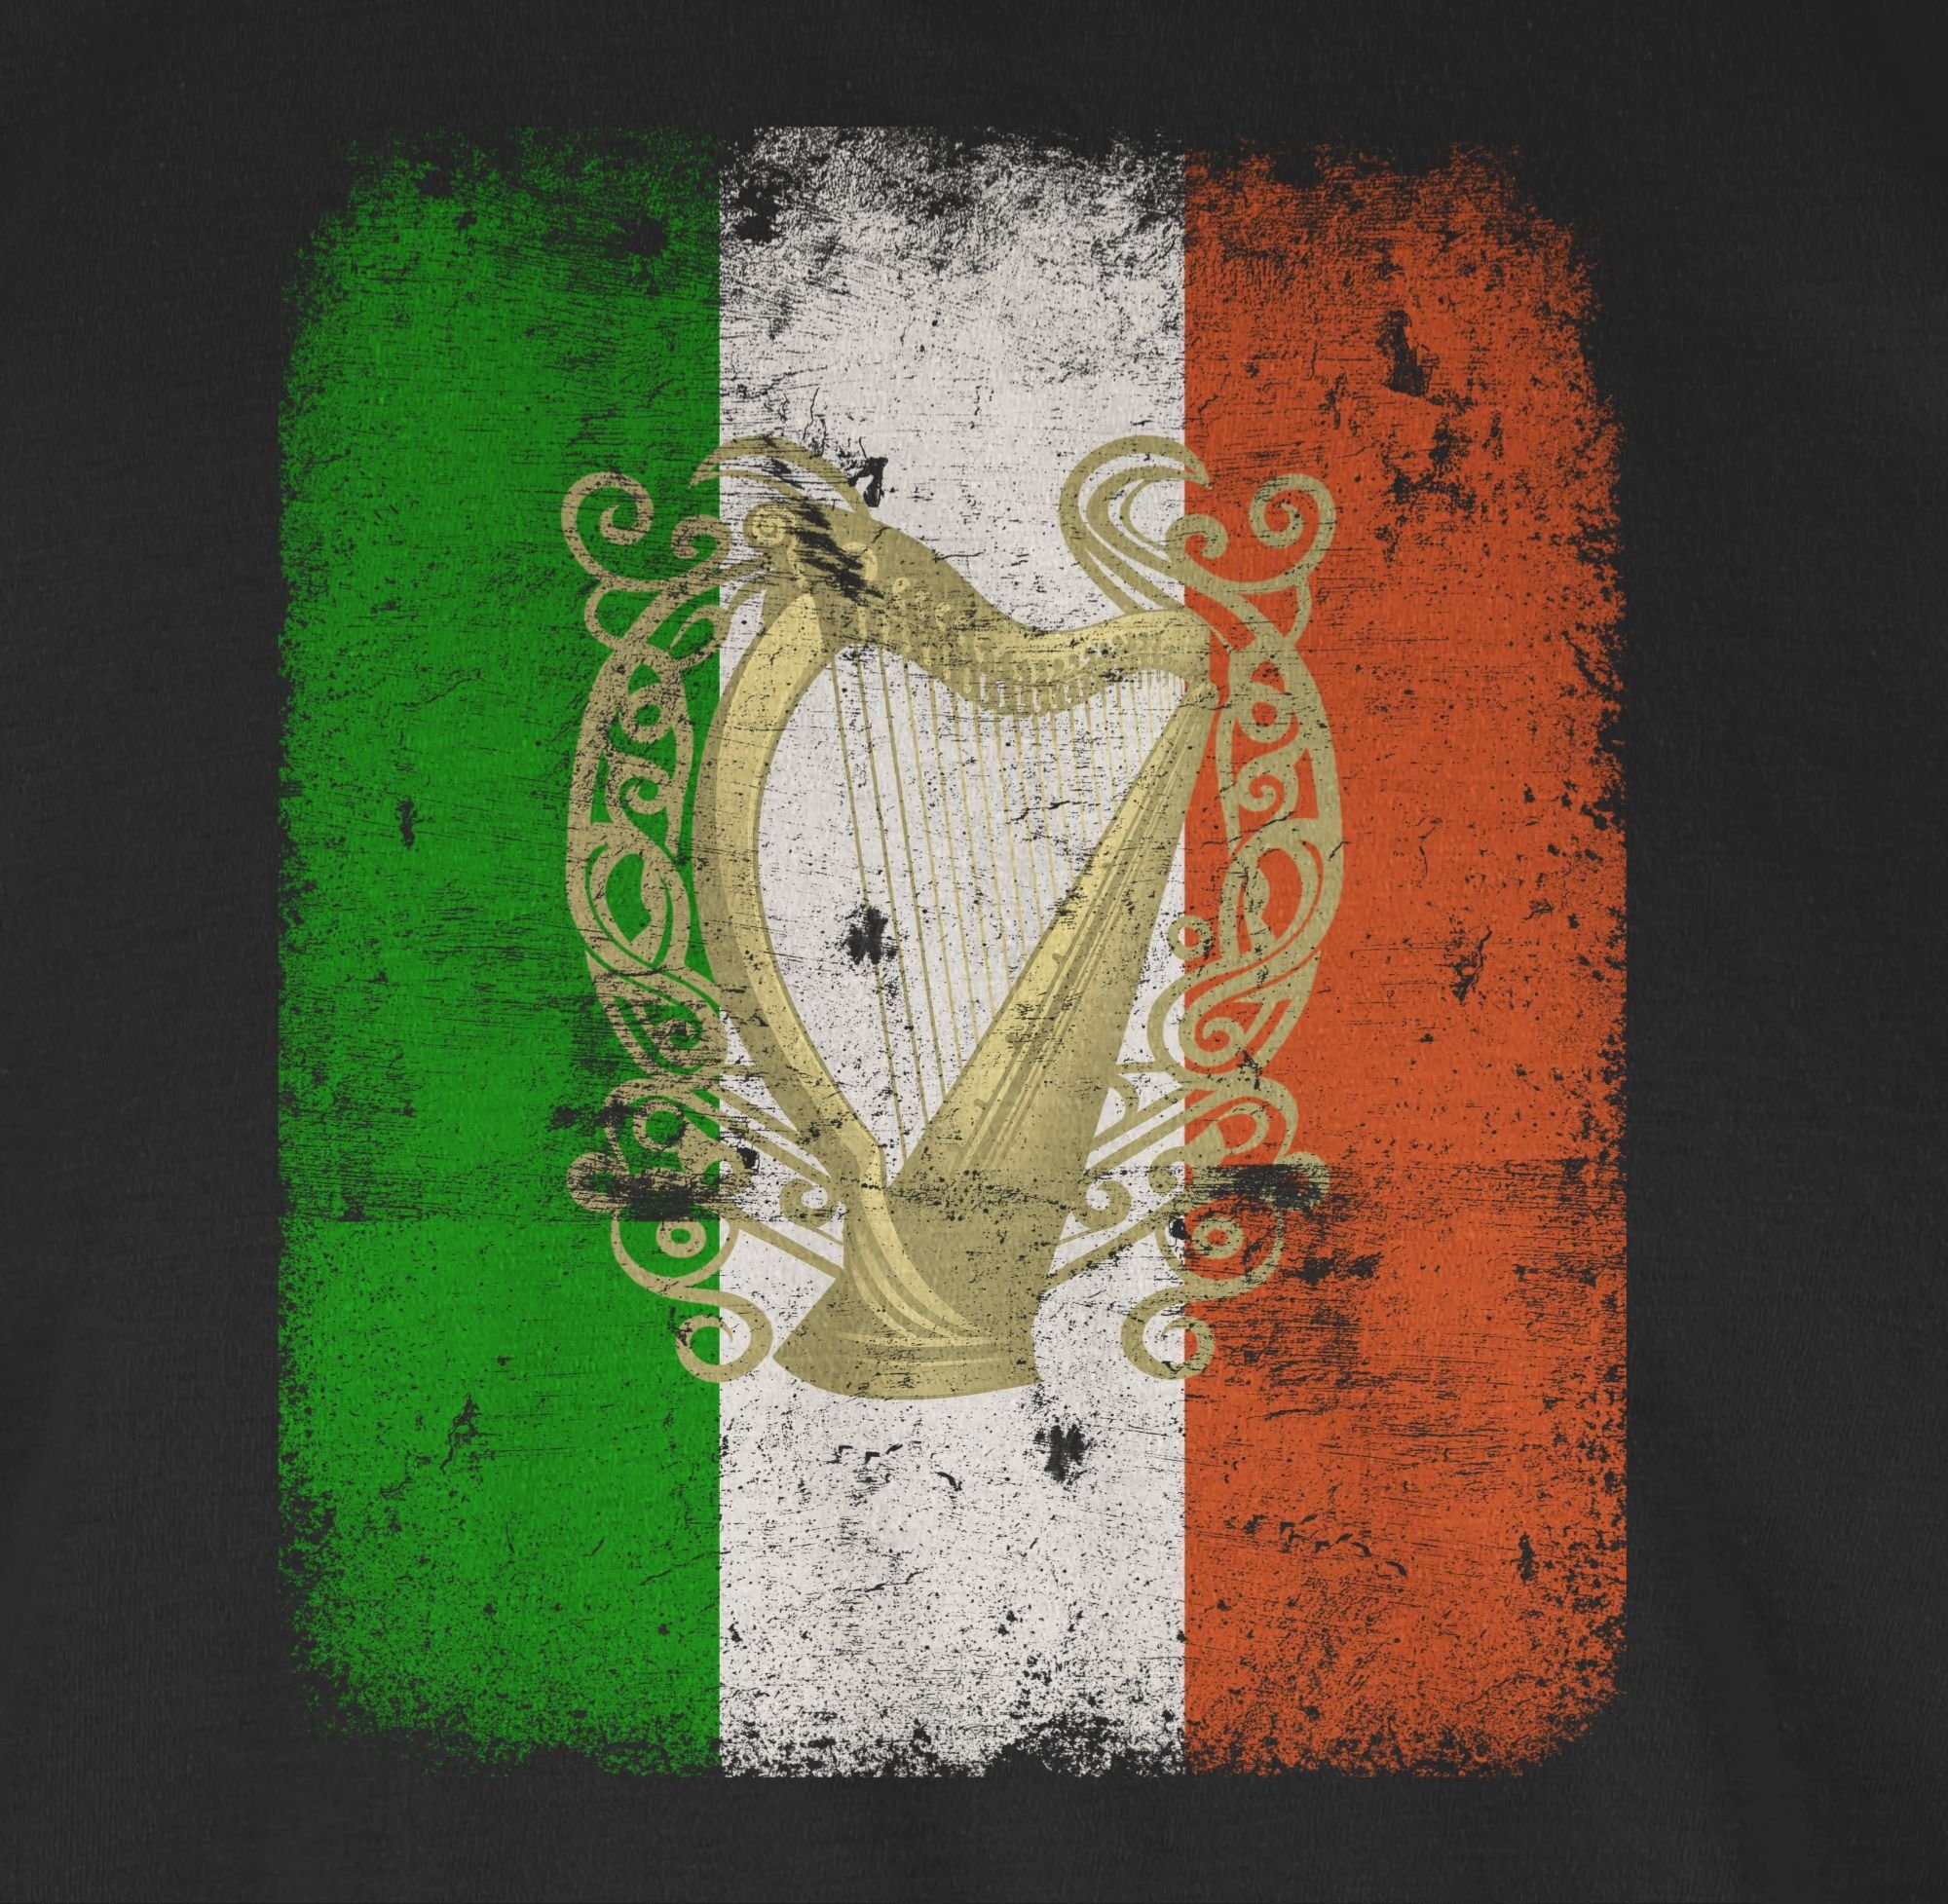 Shirtracer T-Shirt Irland Irische Patricks Schwarz Irish Flag Flagge 01 St. Day